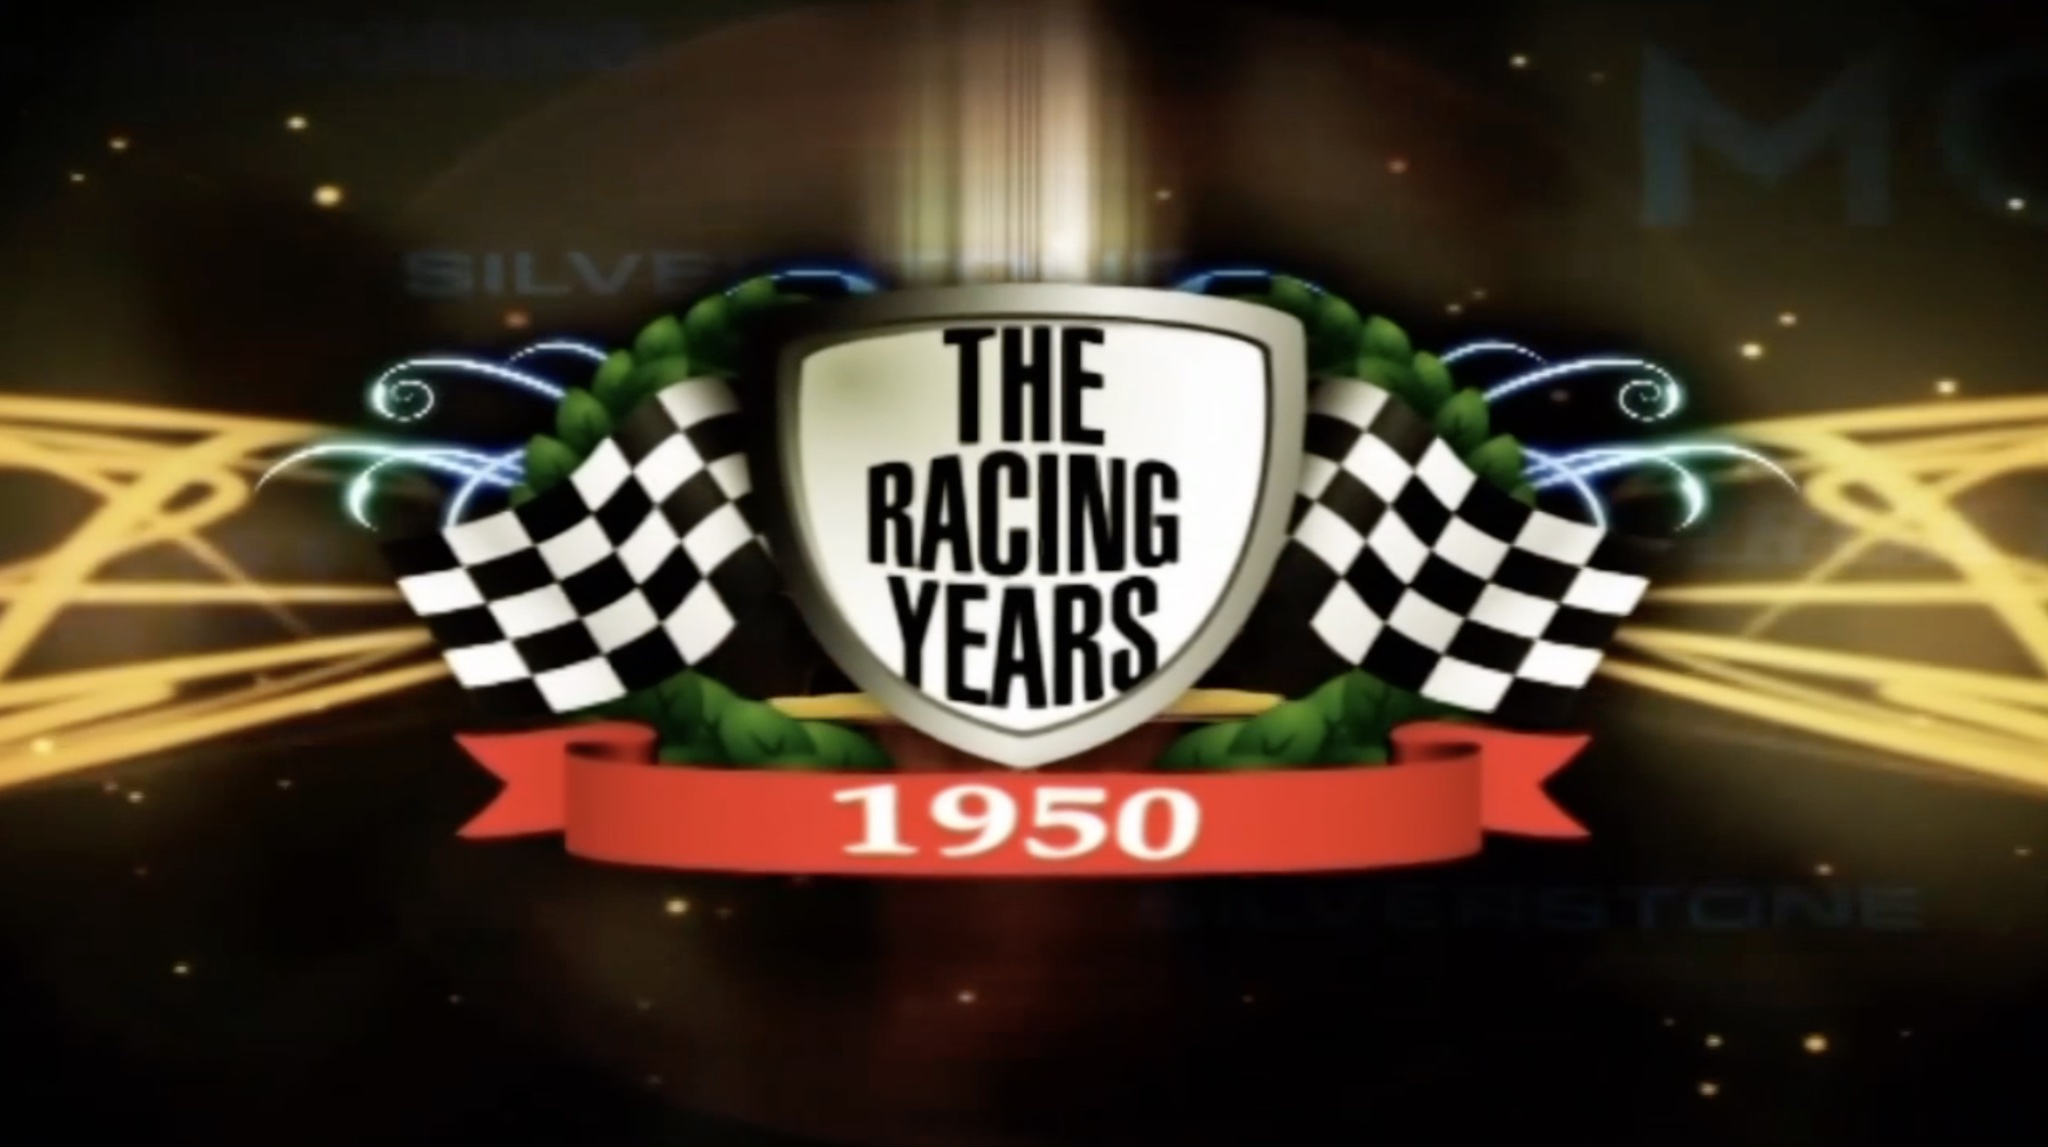 The Racing Years